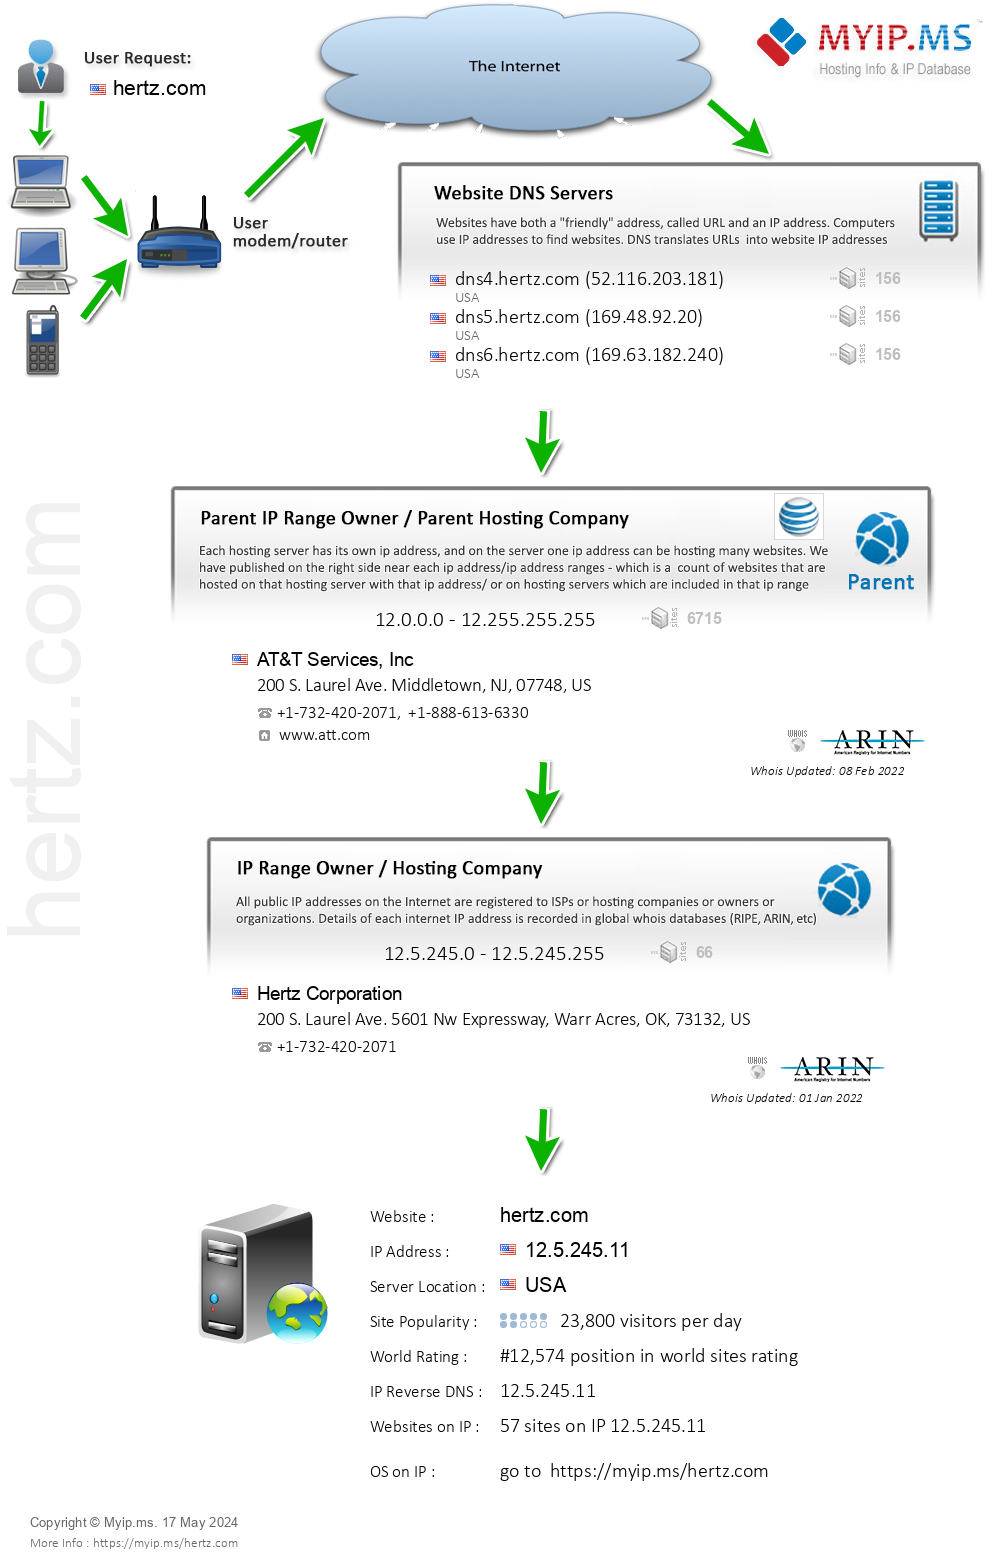 Hertz.com - Website Hosting Visual IP Diagram